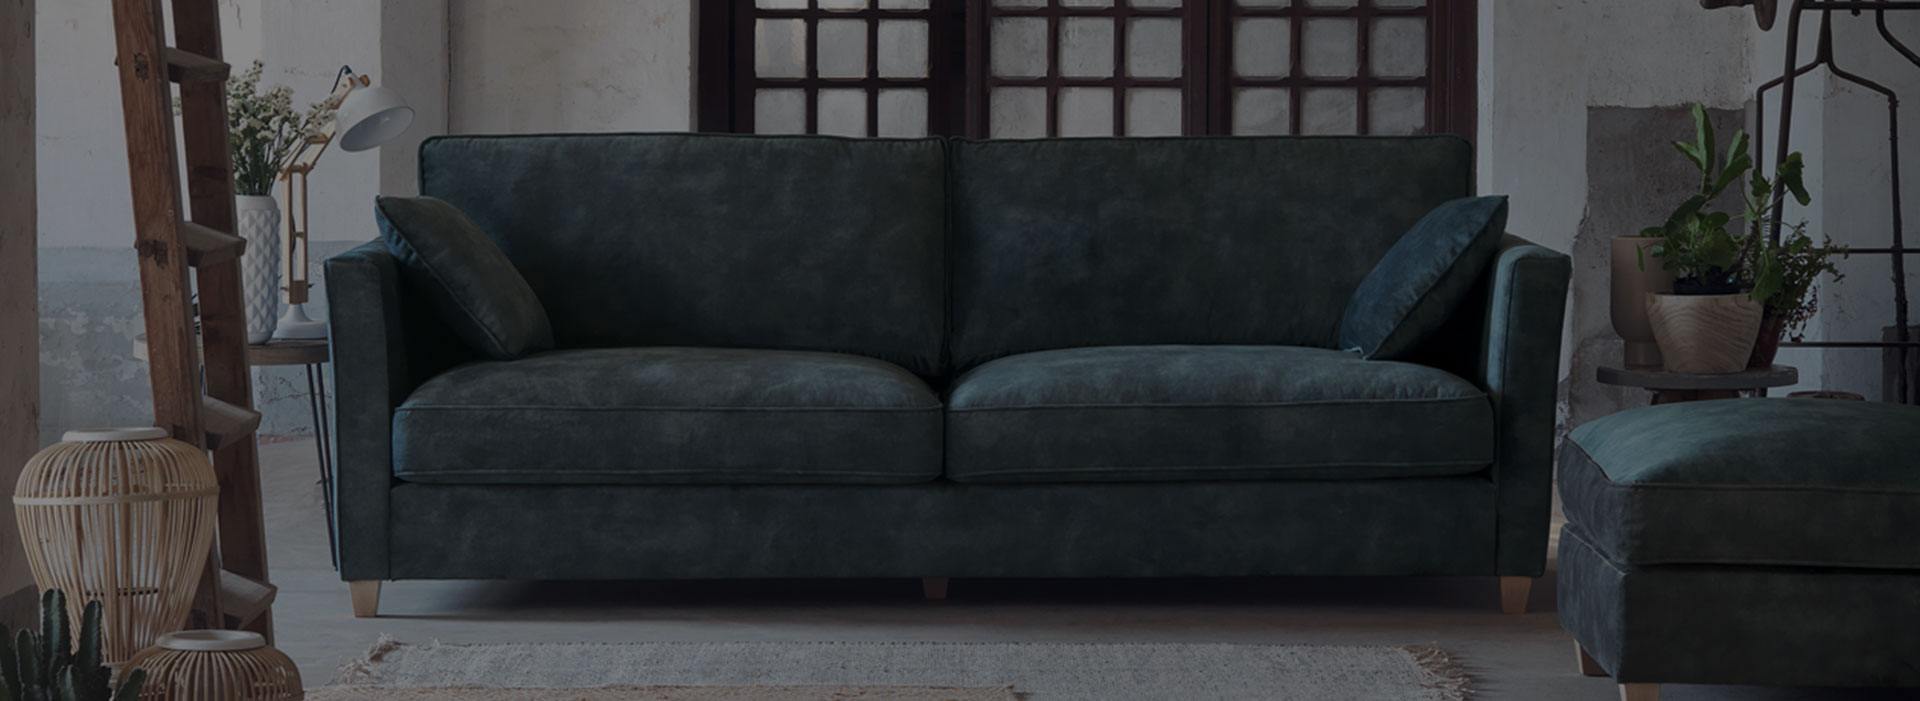 7 conseils pour rendre son canapé confortable